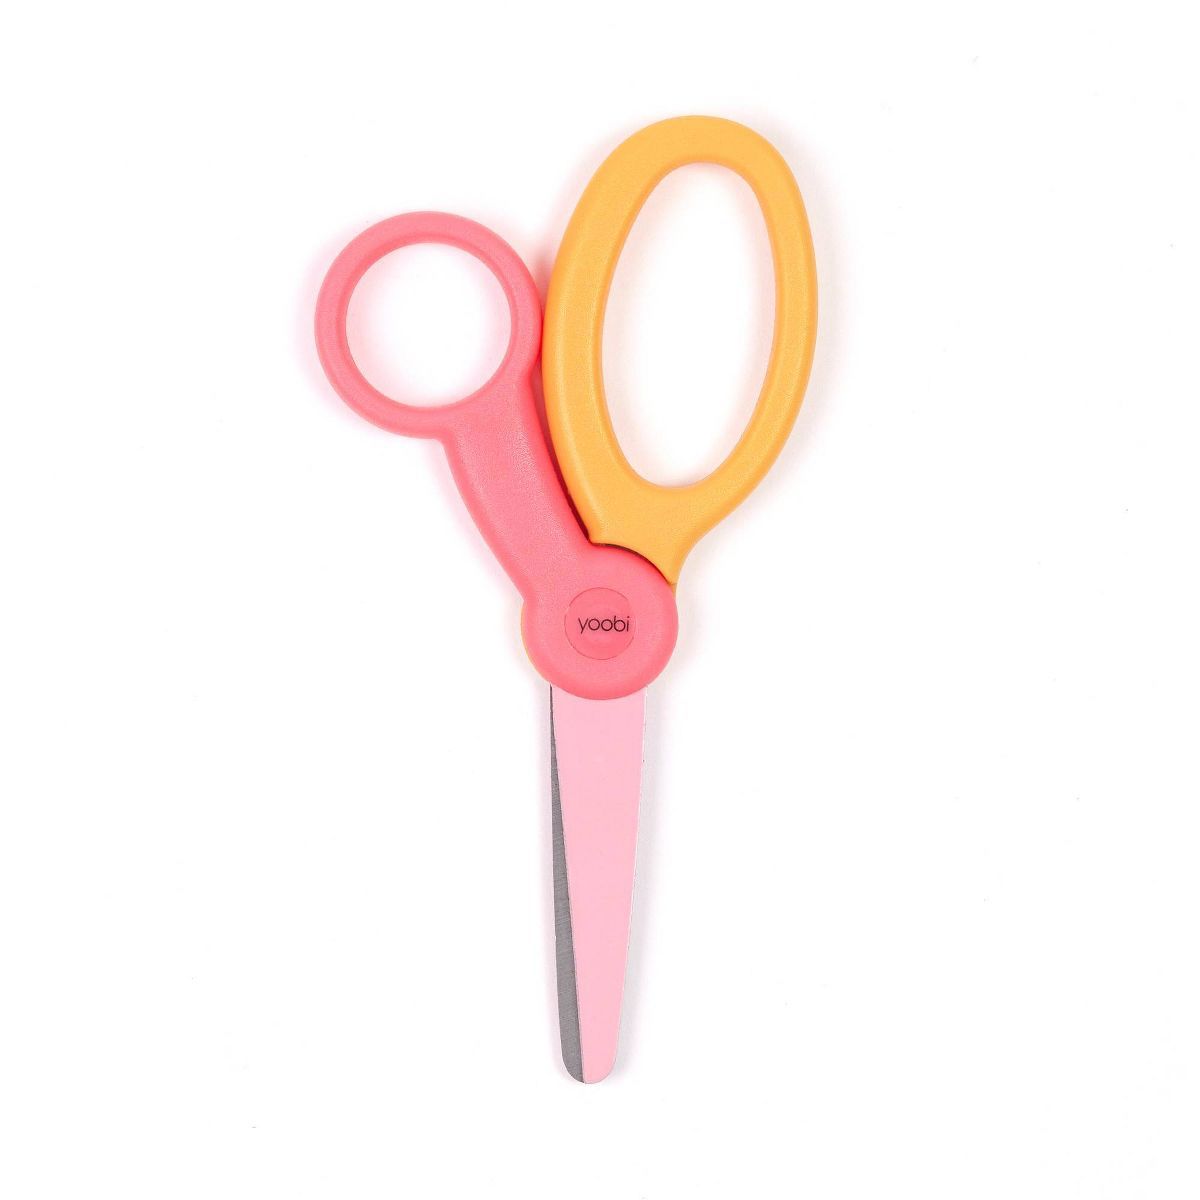 Kid Scissors Pink and Yellow Color Block - Yoobi™ | Target